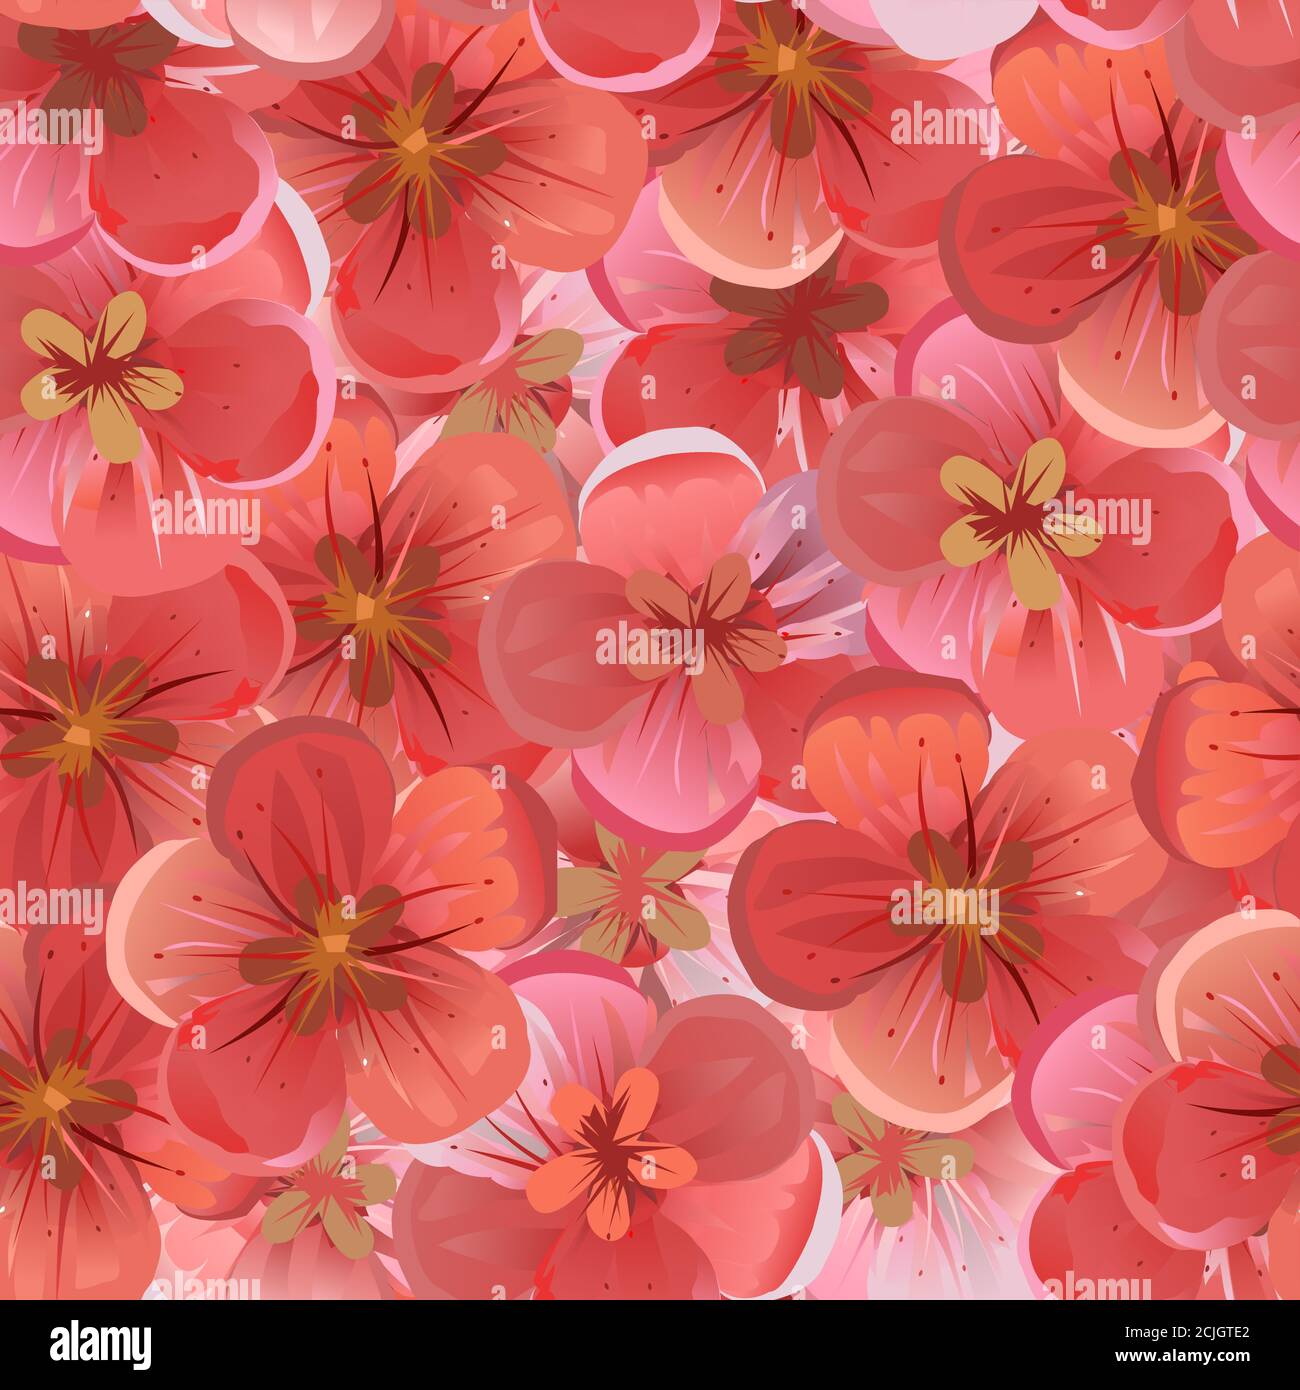 Fruchtige rosa und rote Blüten. Vektor. Geometrische nahtlose Hintergrundstruktur. Blühende Kirsche, Apfel, Aprikose, Pfirsich. Sakura. Stock Vektor